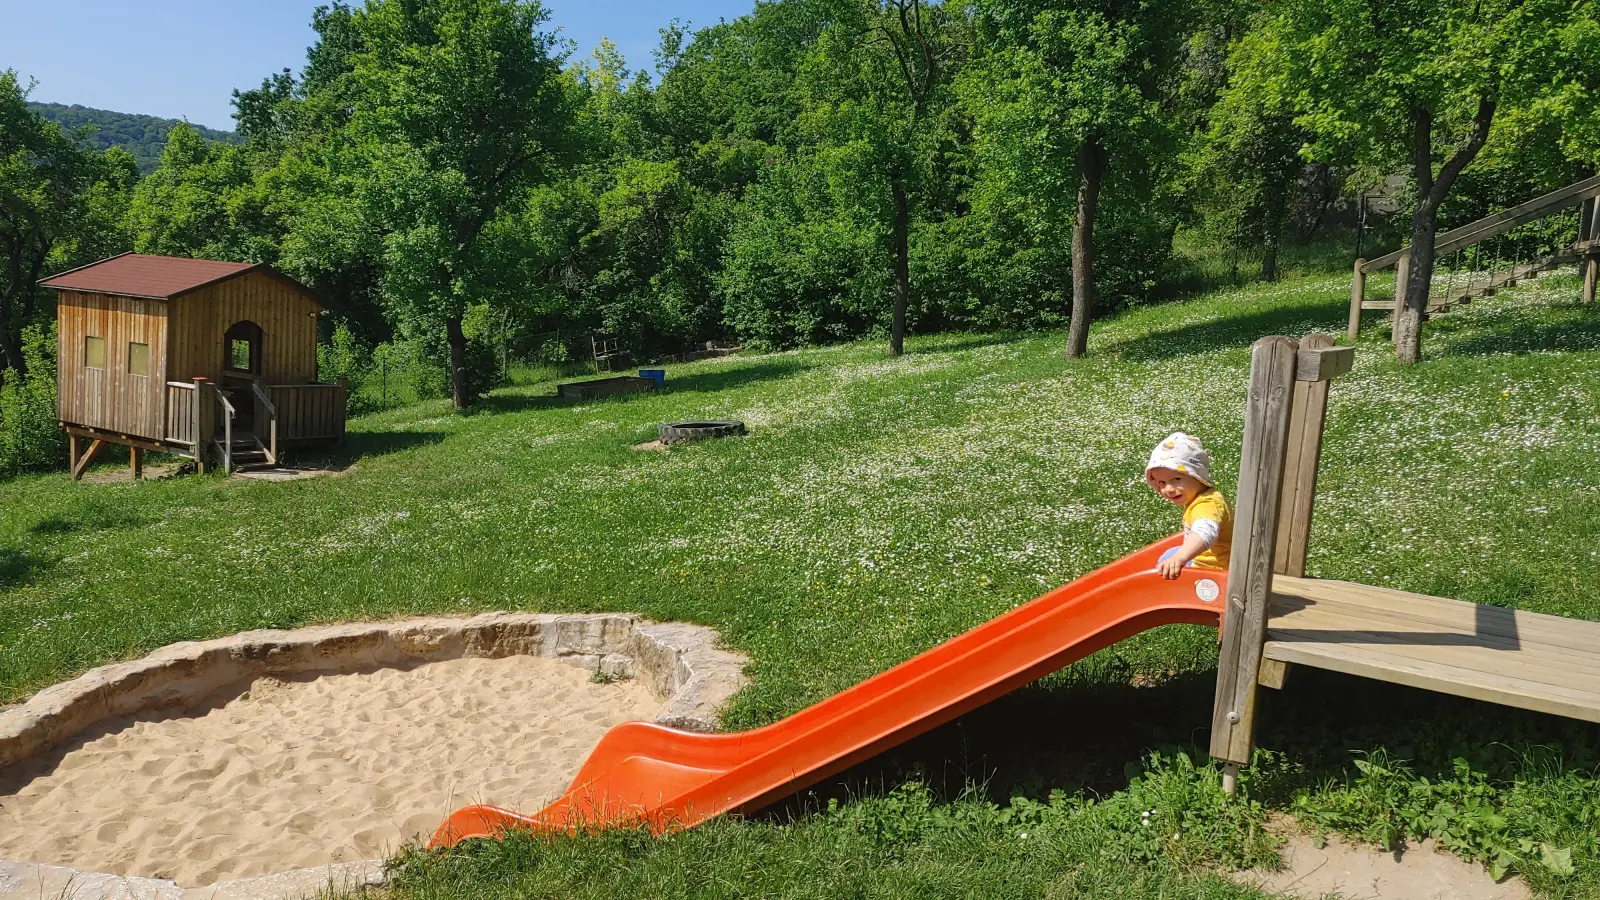 Bekommt die Kindertagesstätte Arche Noah in Burgbernheim künftig eine Naturgruppe in den Streuobstwiesen? Über diese Idee diskutierte der Stadtrat in seiner jüngsten Sitzung. (Foto: Katrin Merklein)